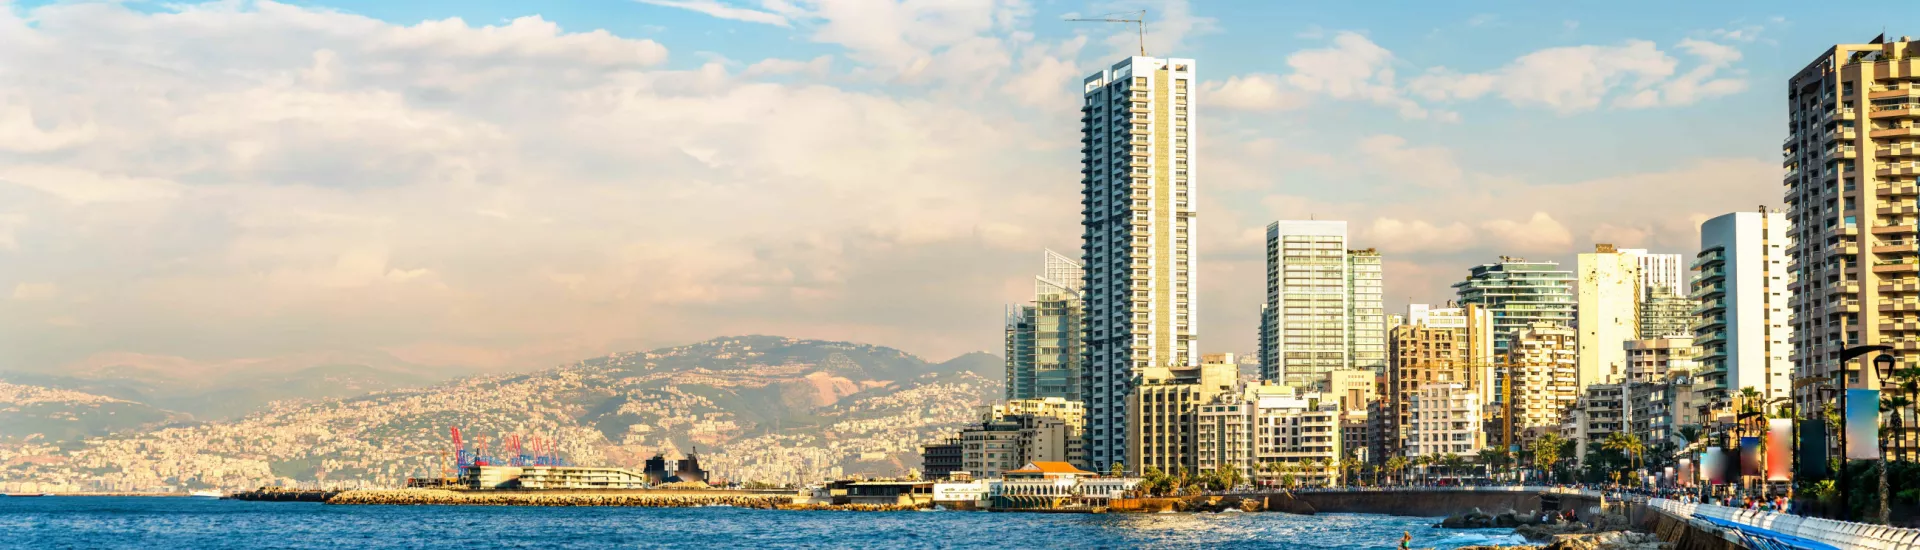 The Corniche seaside promenade in Beirut, Lebanon